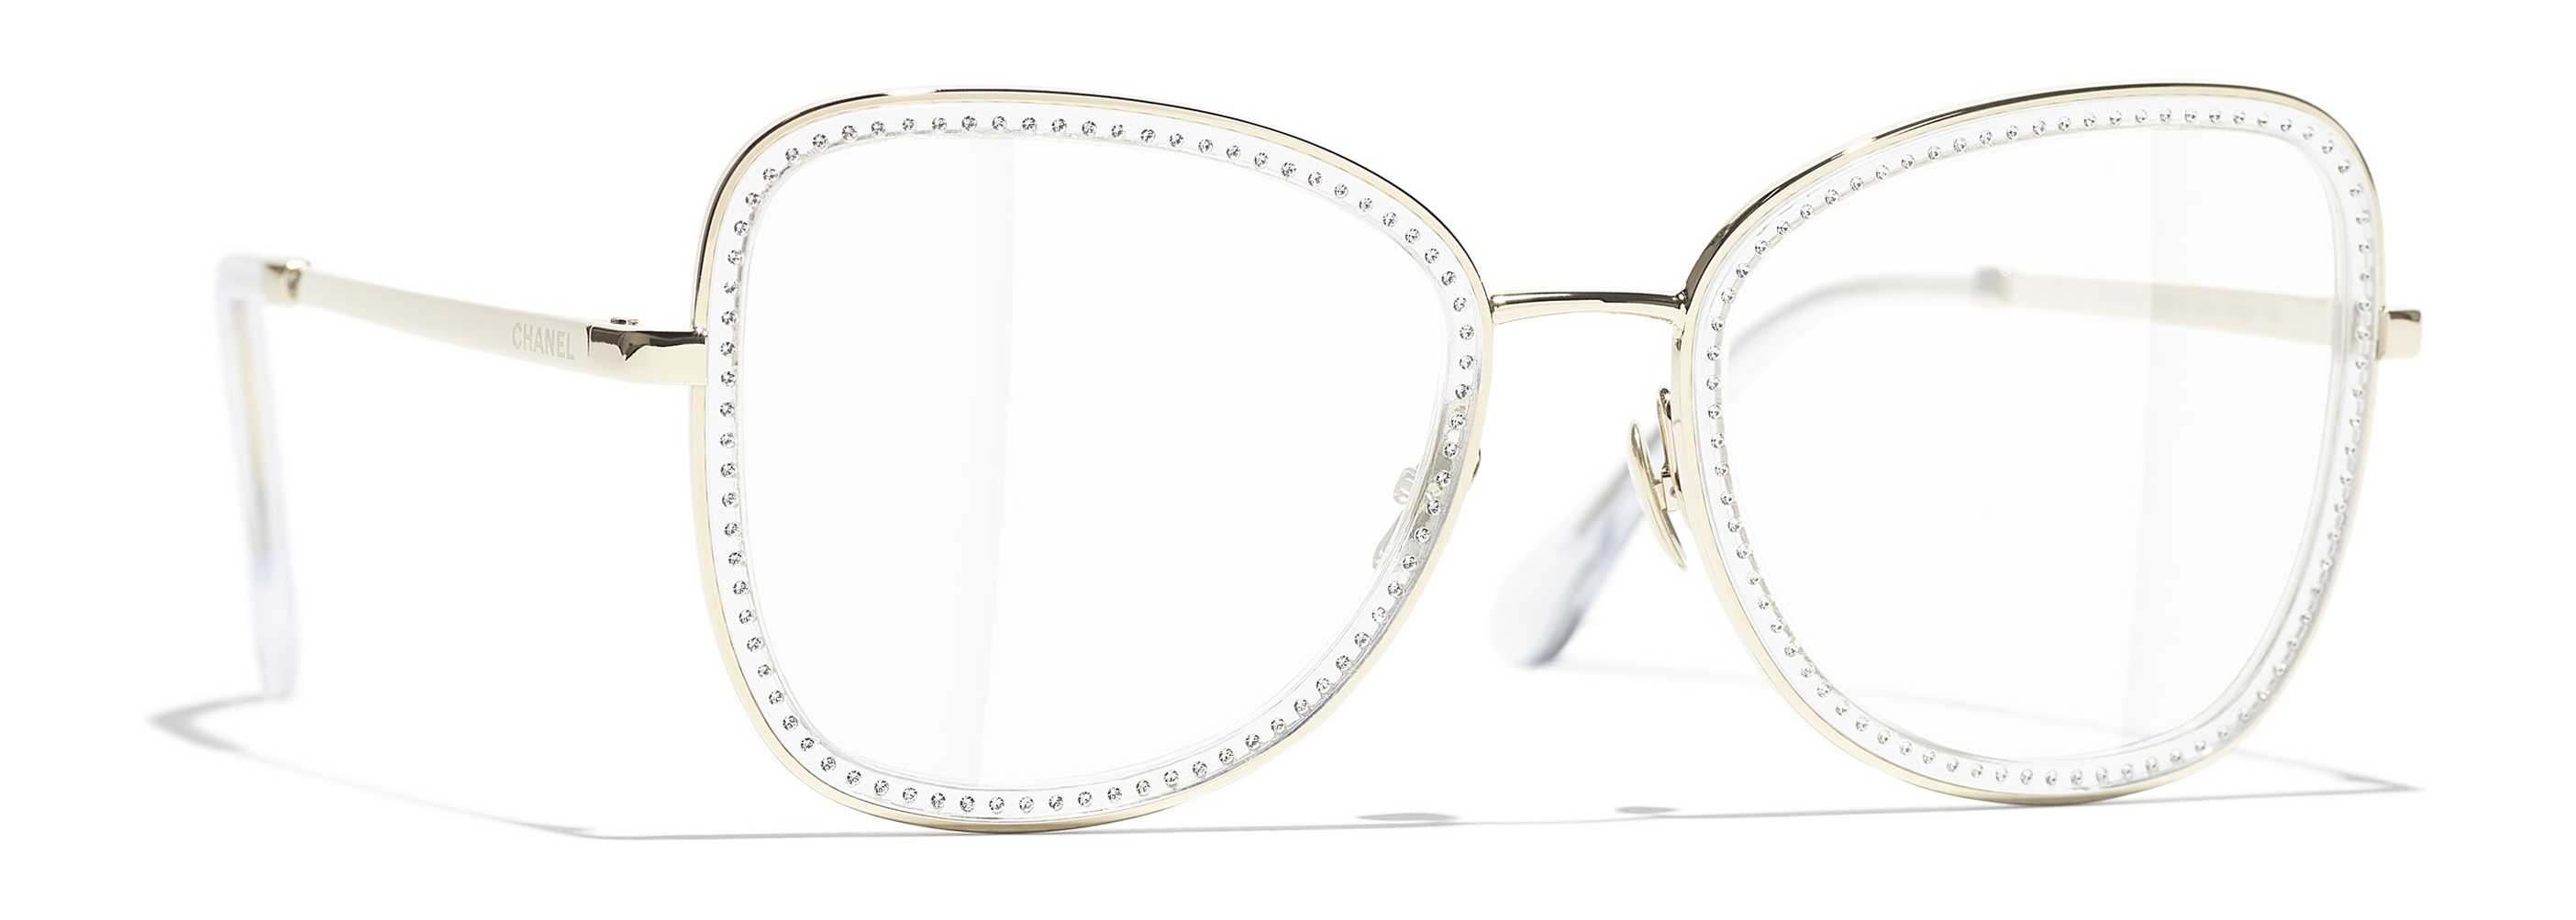 Eyeglasses CHANEL CH 2208B-C269 51/20 Woman Or rectangle frames Full Frame  Glasses trendy 51mmx20mm 376$CA